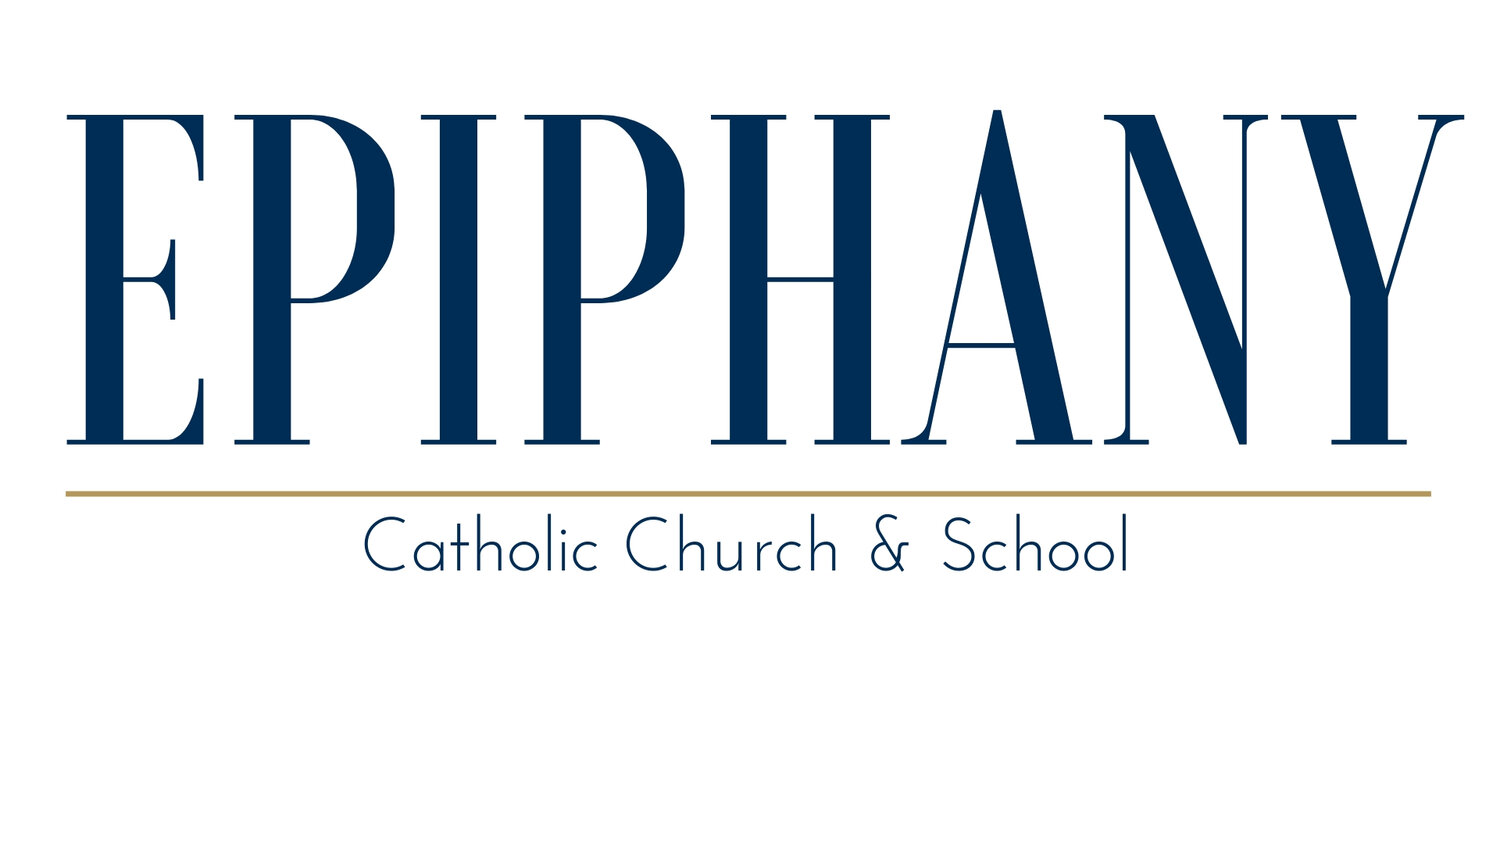 Epiphany Catholic School